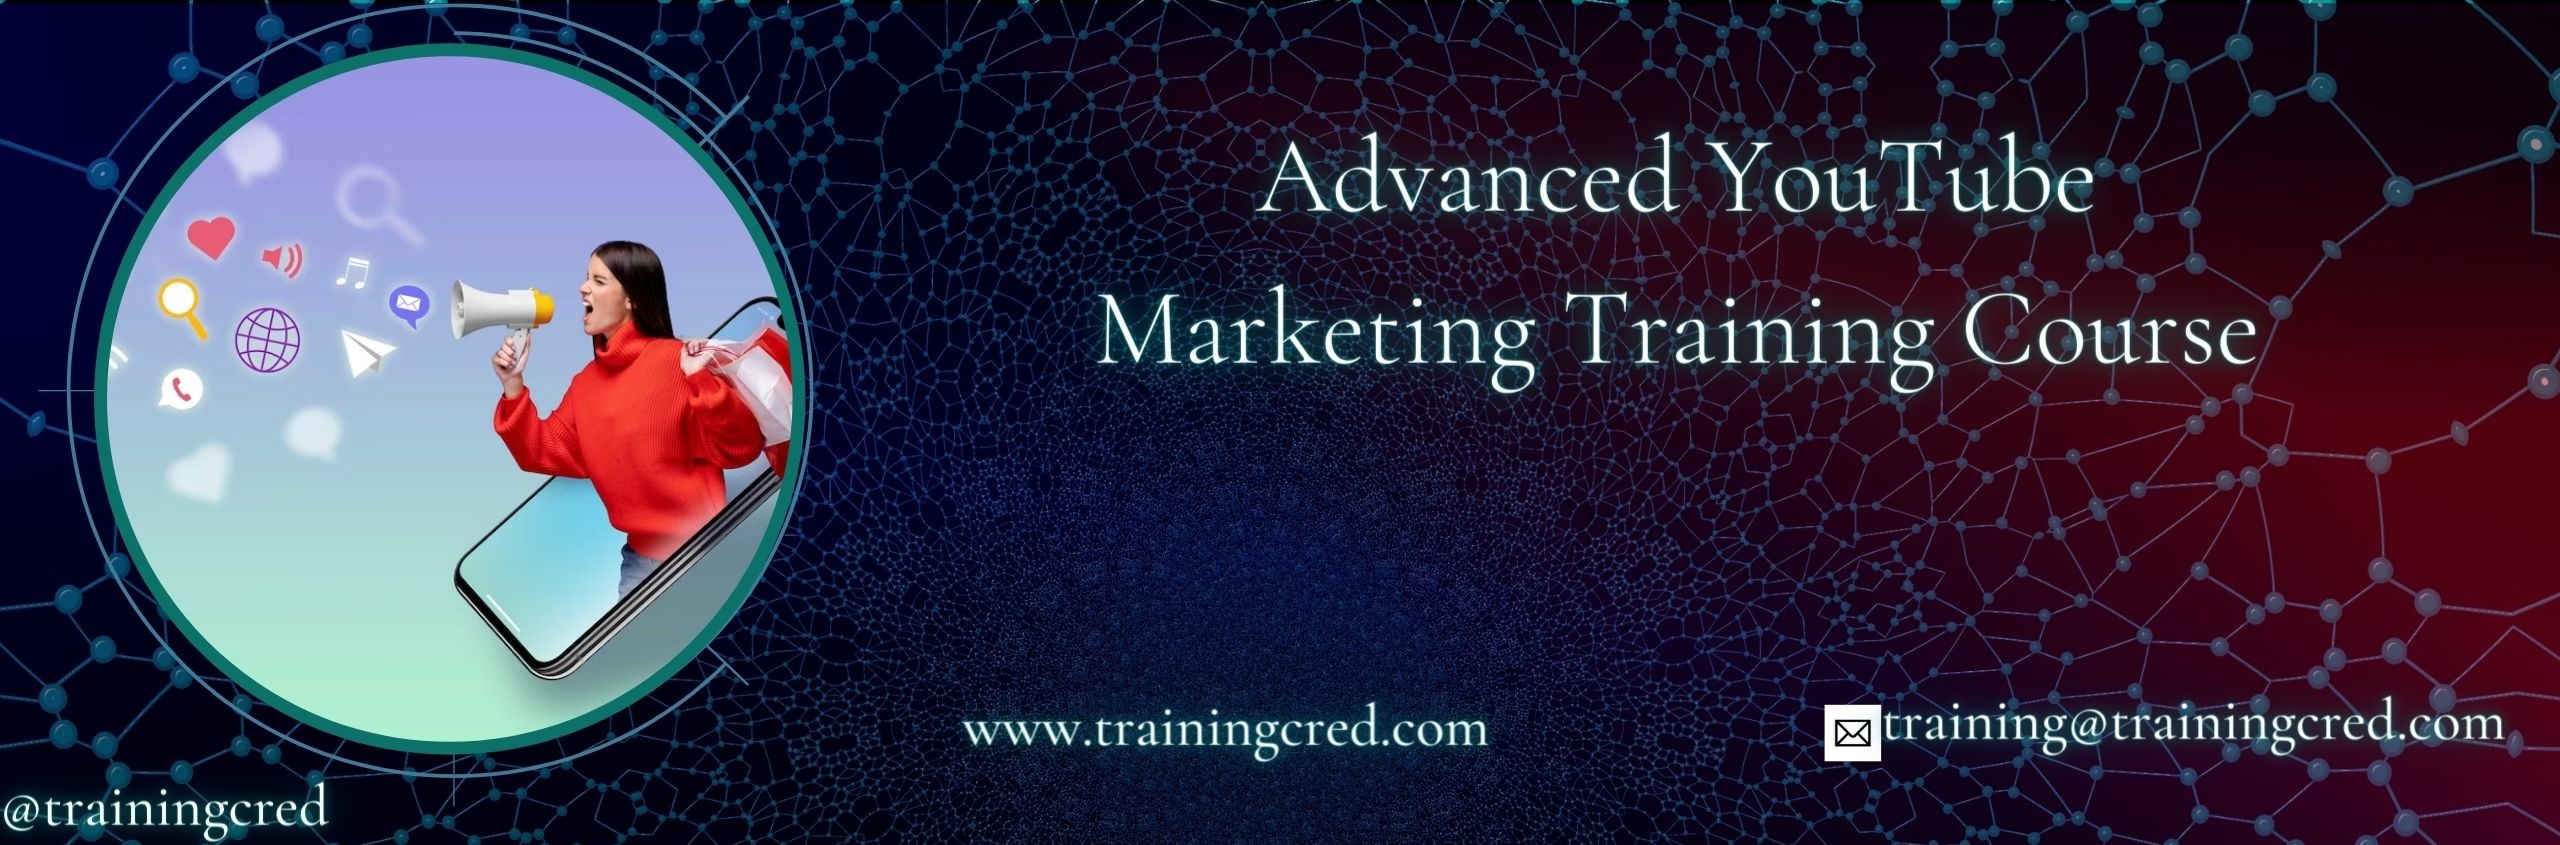 Advanced YouTube Marketing Training